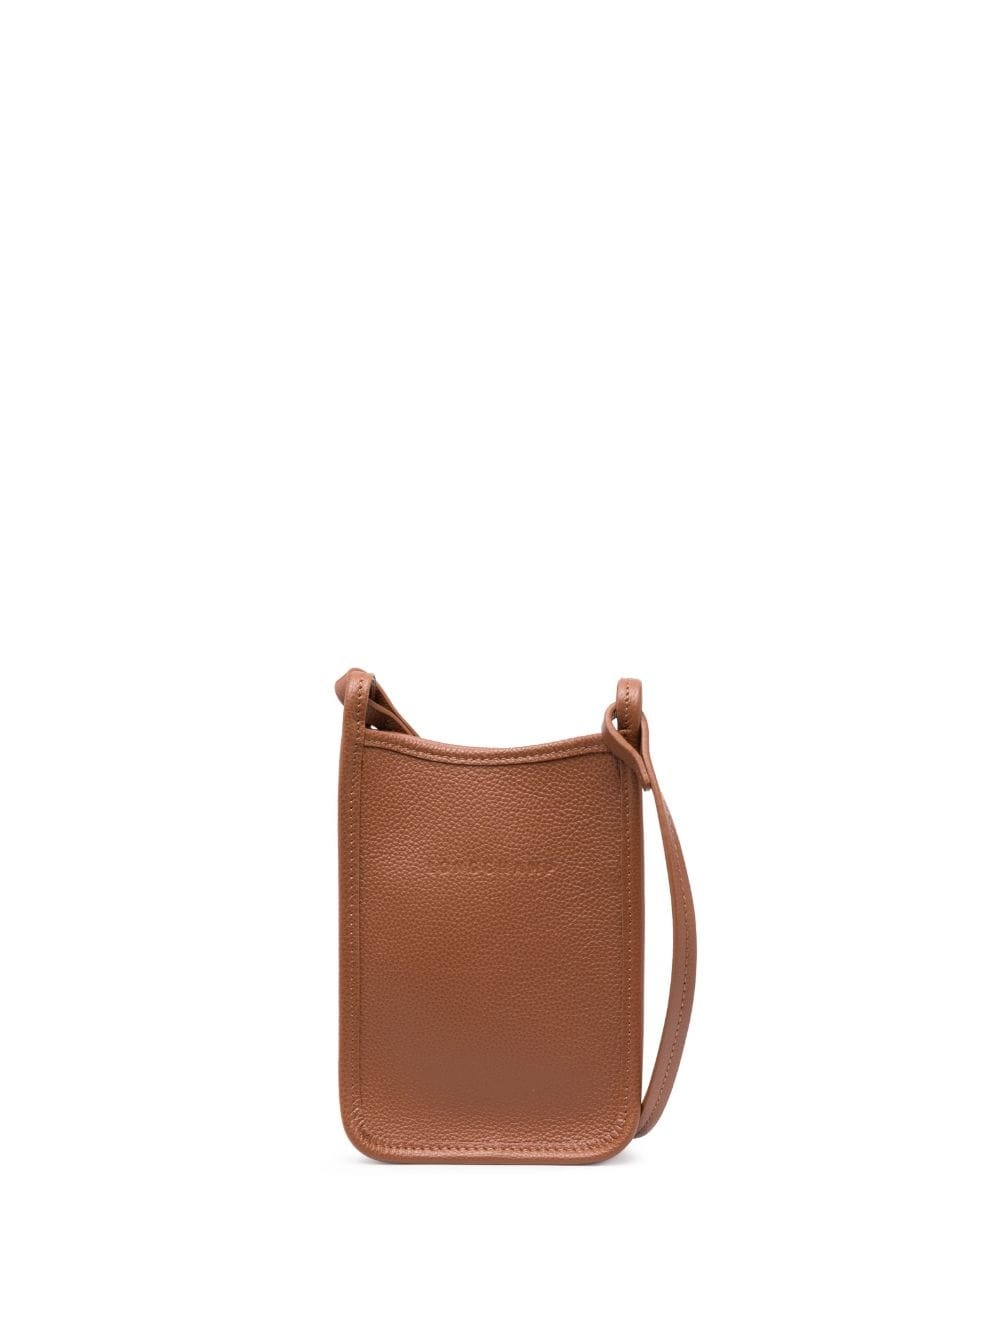 Le FoulonnÃ© leather mini bag - 1